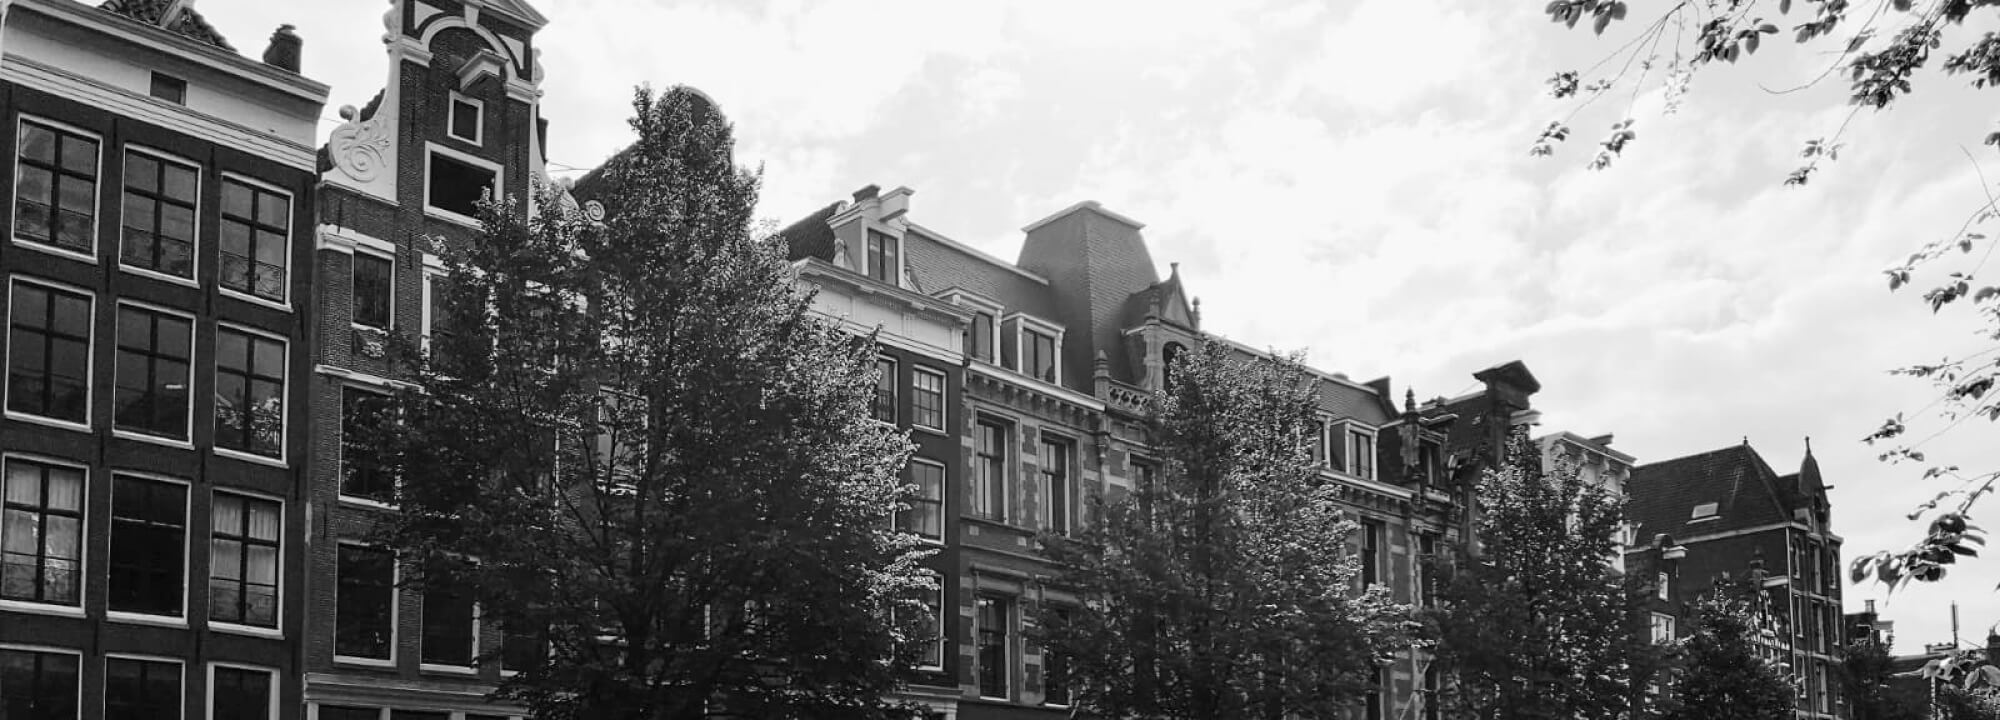 Erfahrungsbericht zum Erasmus+ Auslandssemester: Studieren an der Hogeschool Utrecht